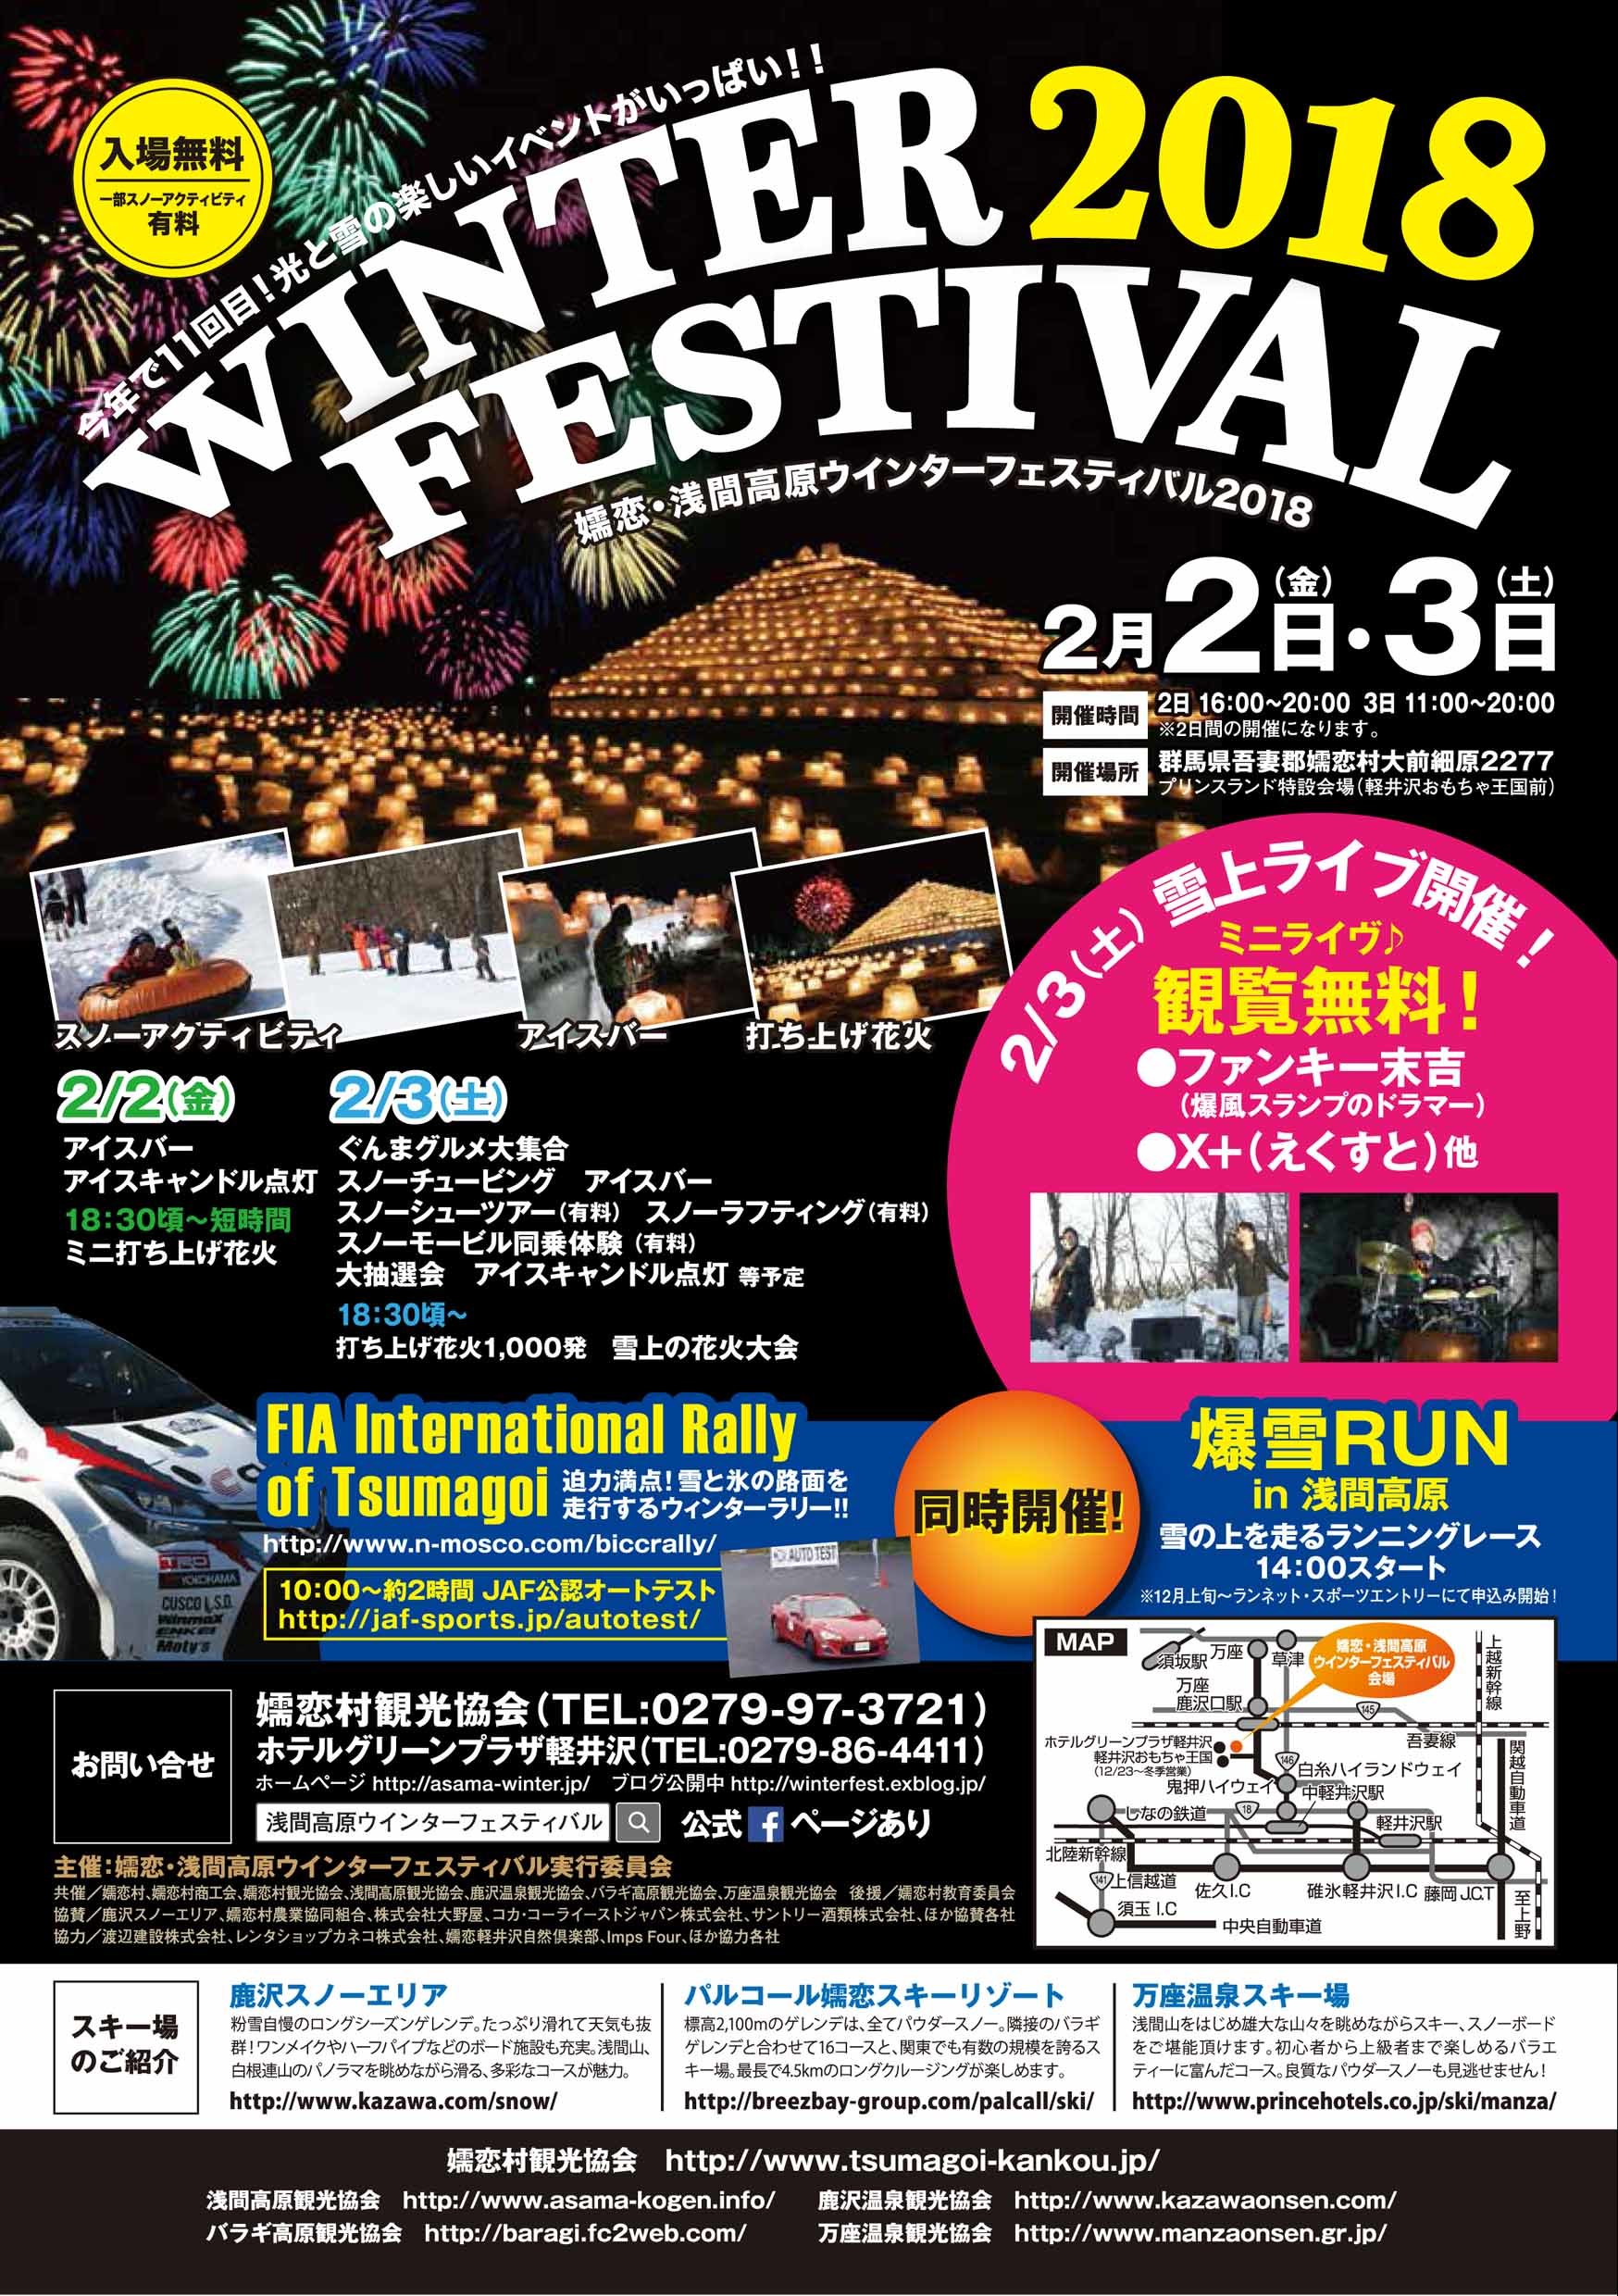 嬬恋・浅間高原ウインターフェスティバル2018開催決定♪_f0180878_17262406.jpg